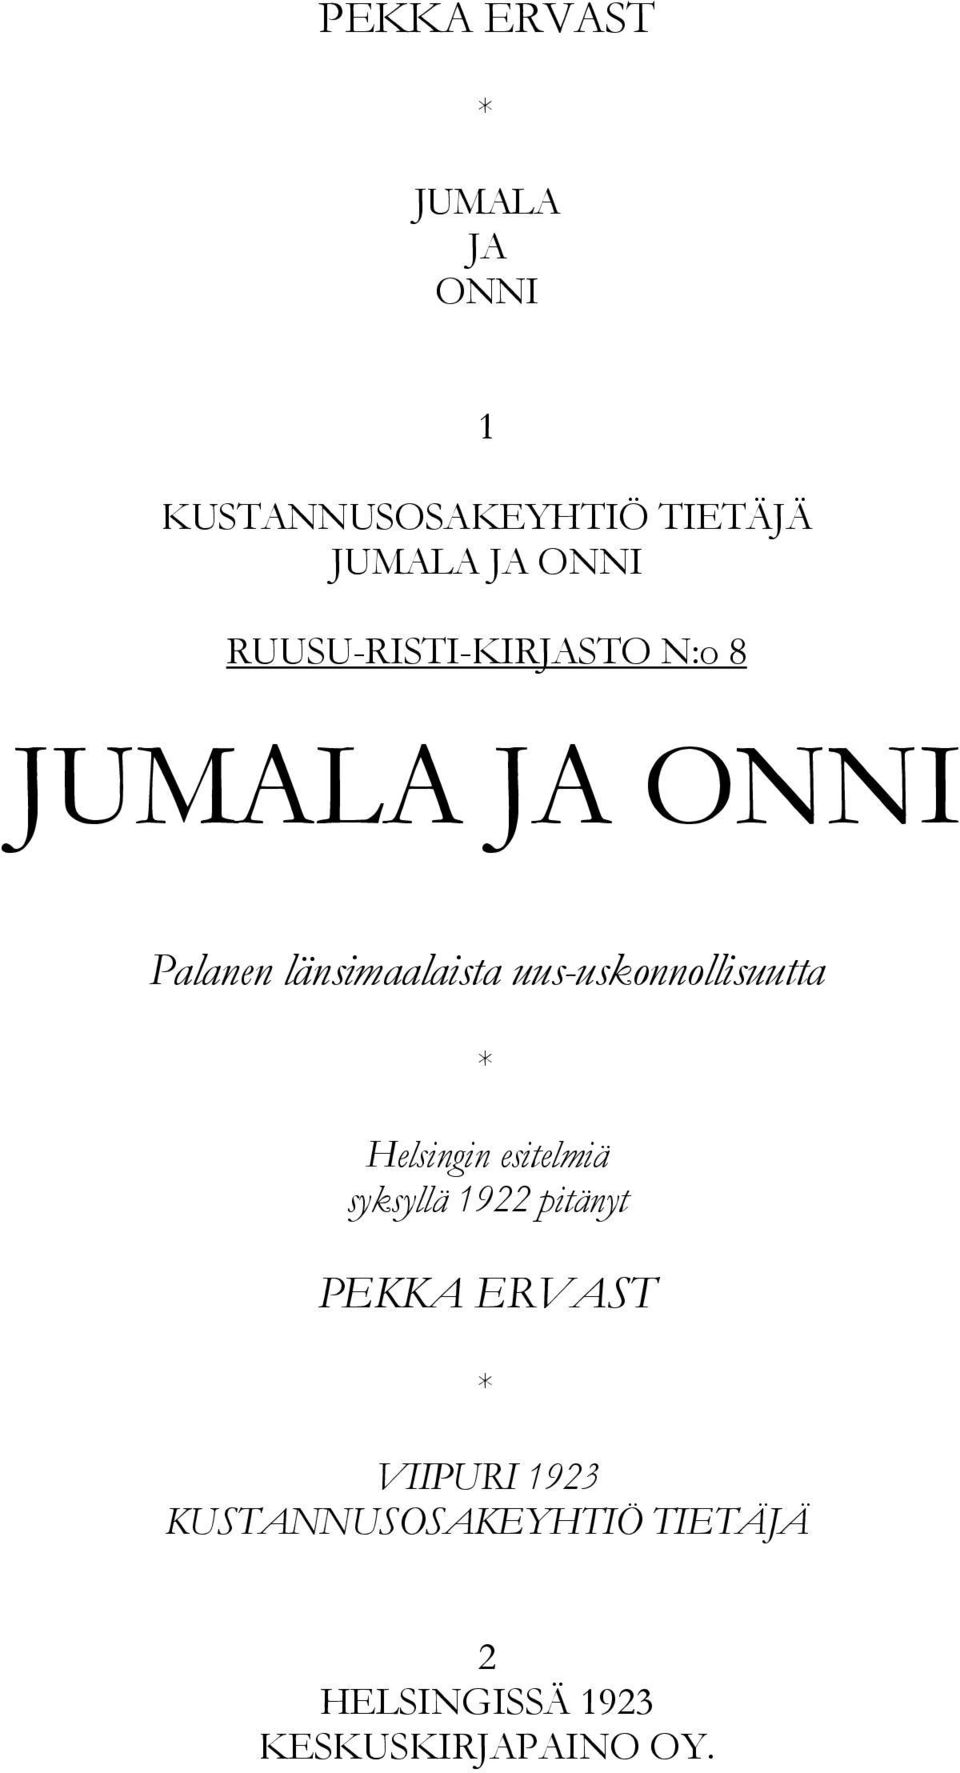 uus-uskonnollisuutta * Helsingin esitelmiä syksyllä 1922 pitänyt PEKKA